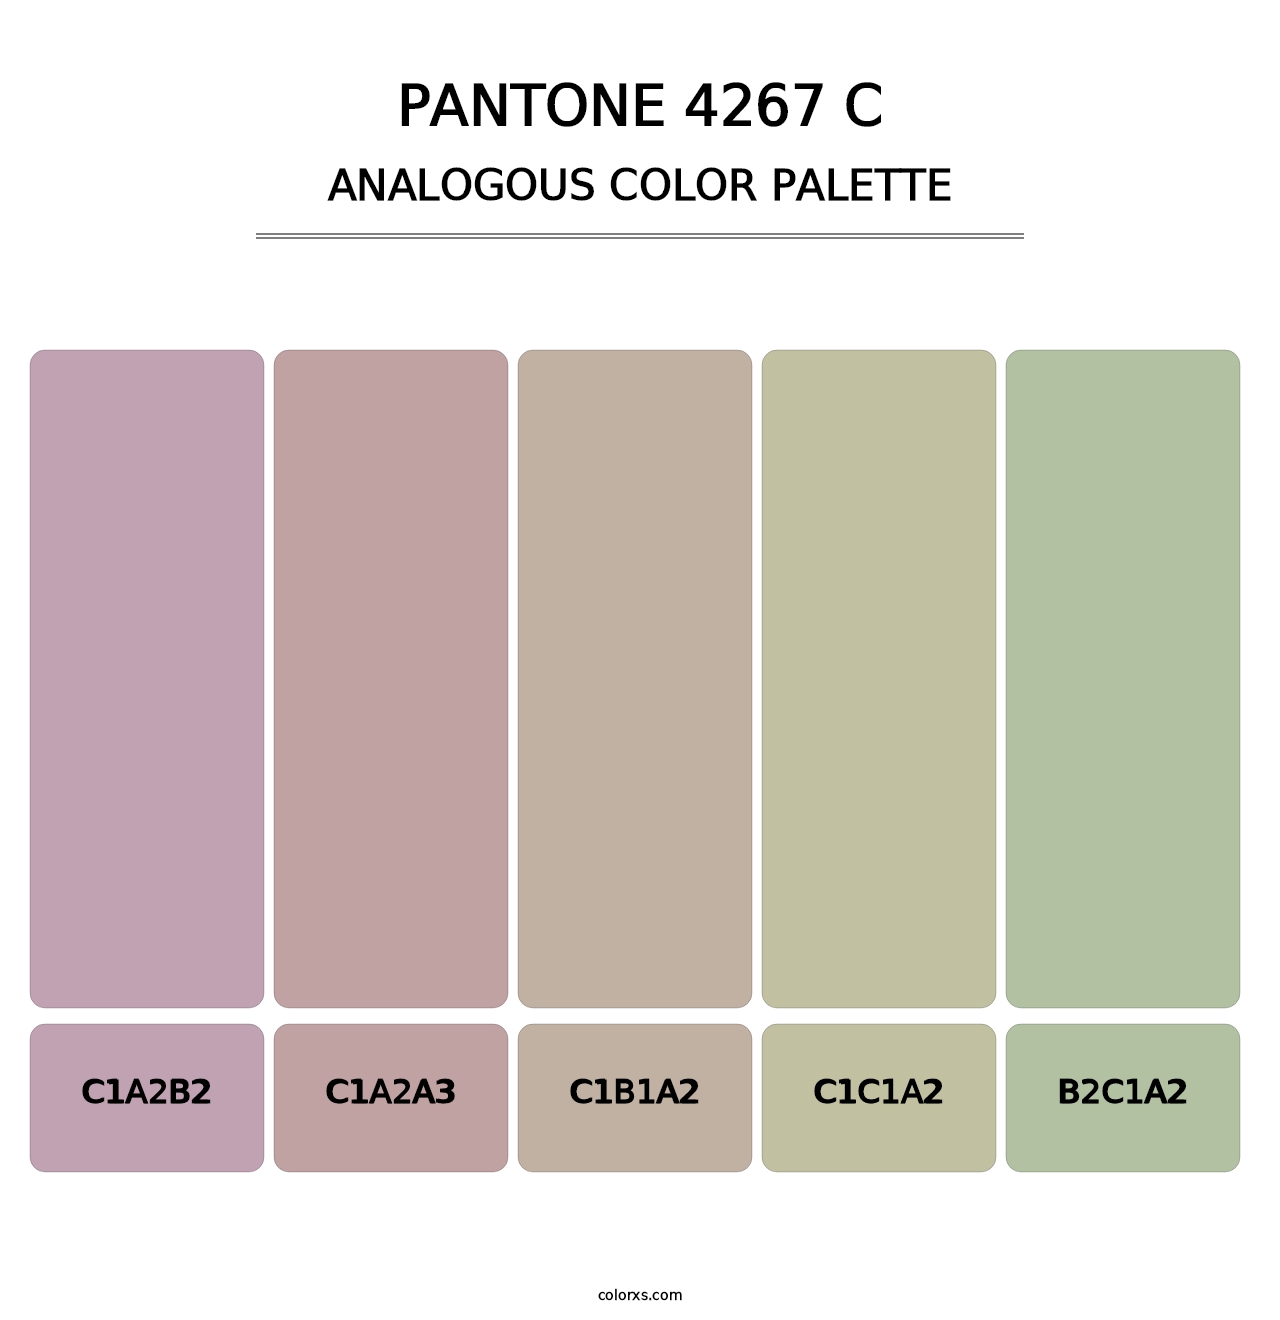 PANTONE 4267 C - Analogous Color Palette